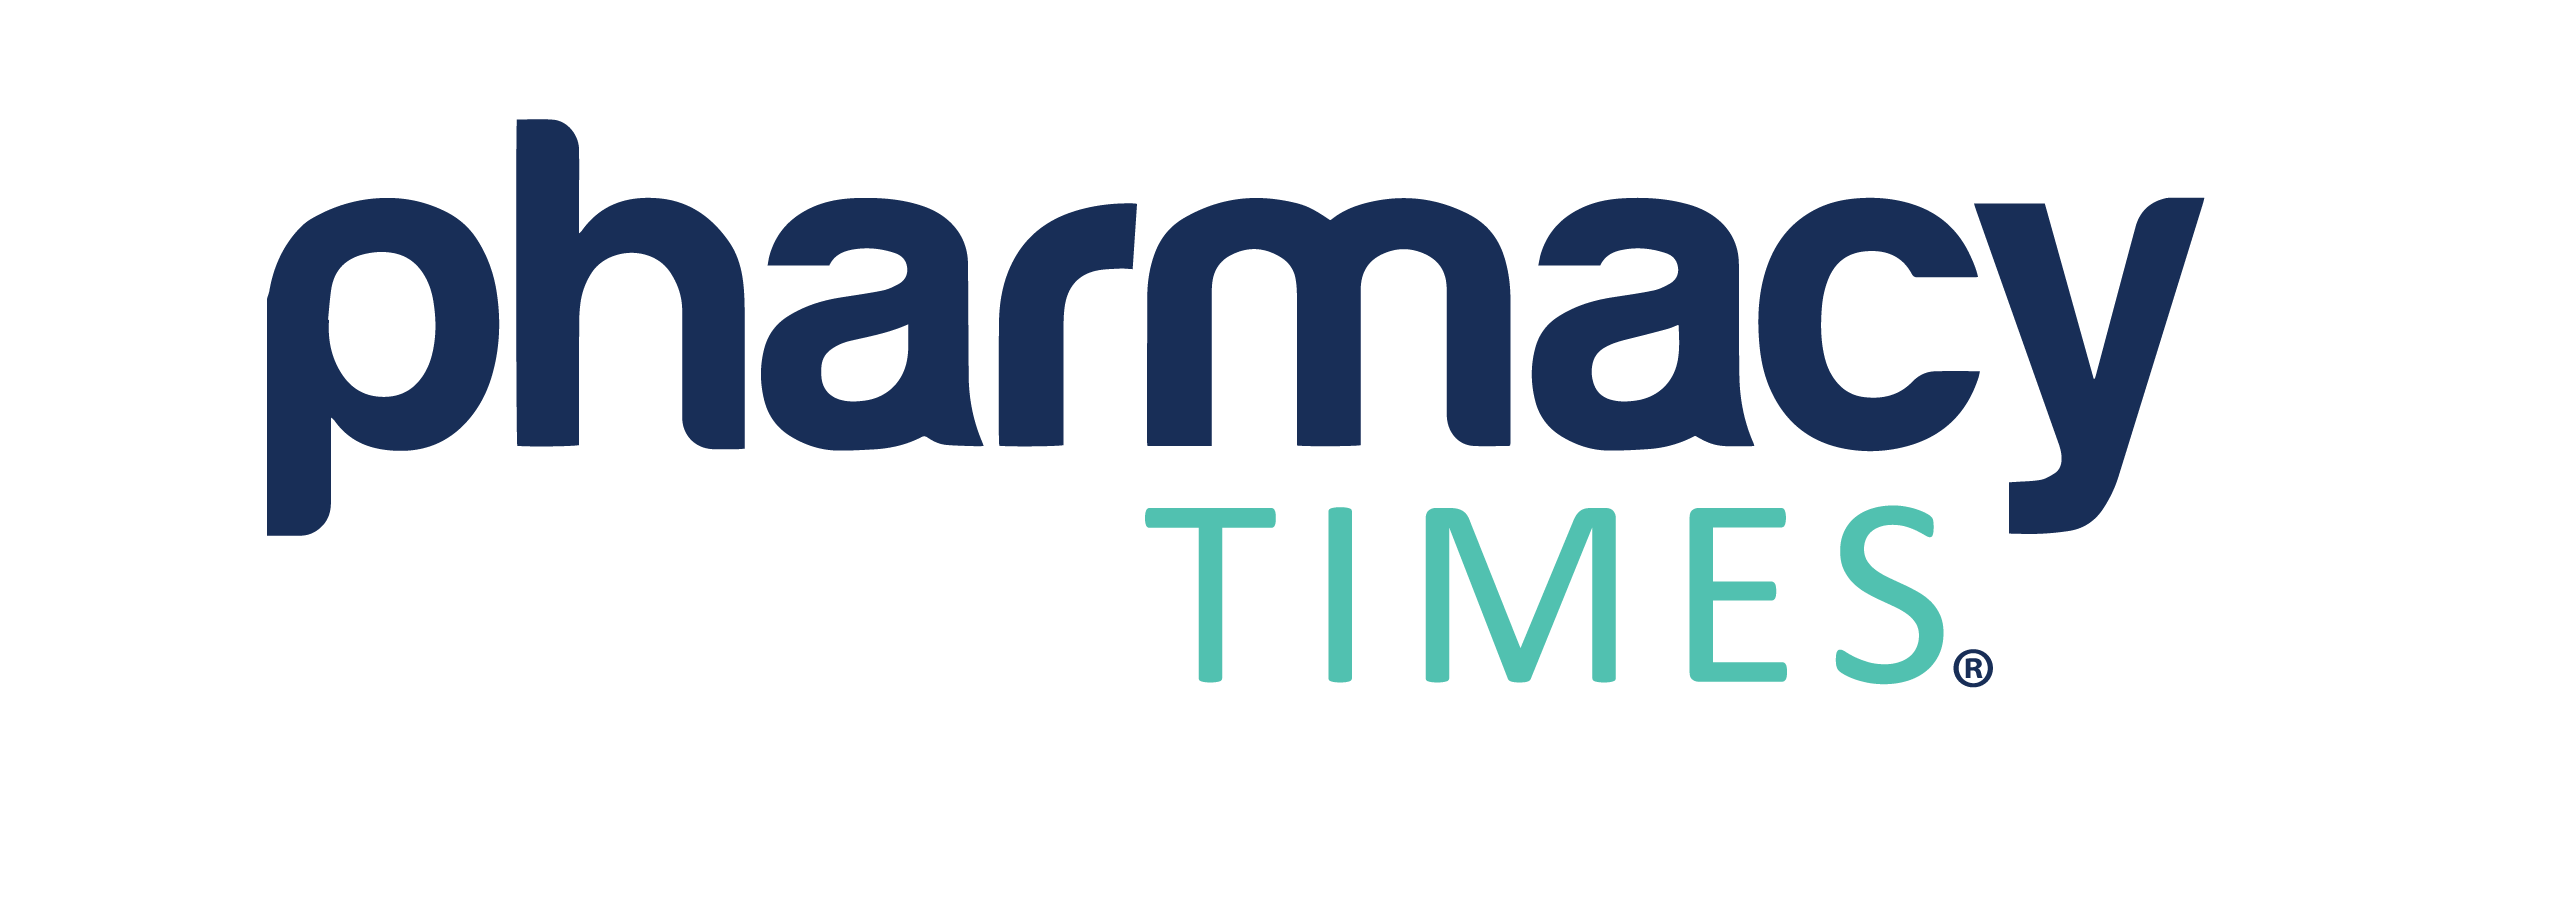 PharmacyTimes logo